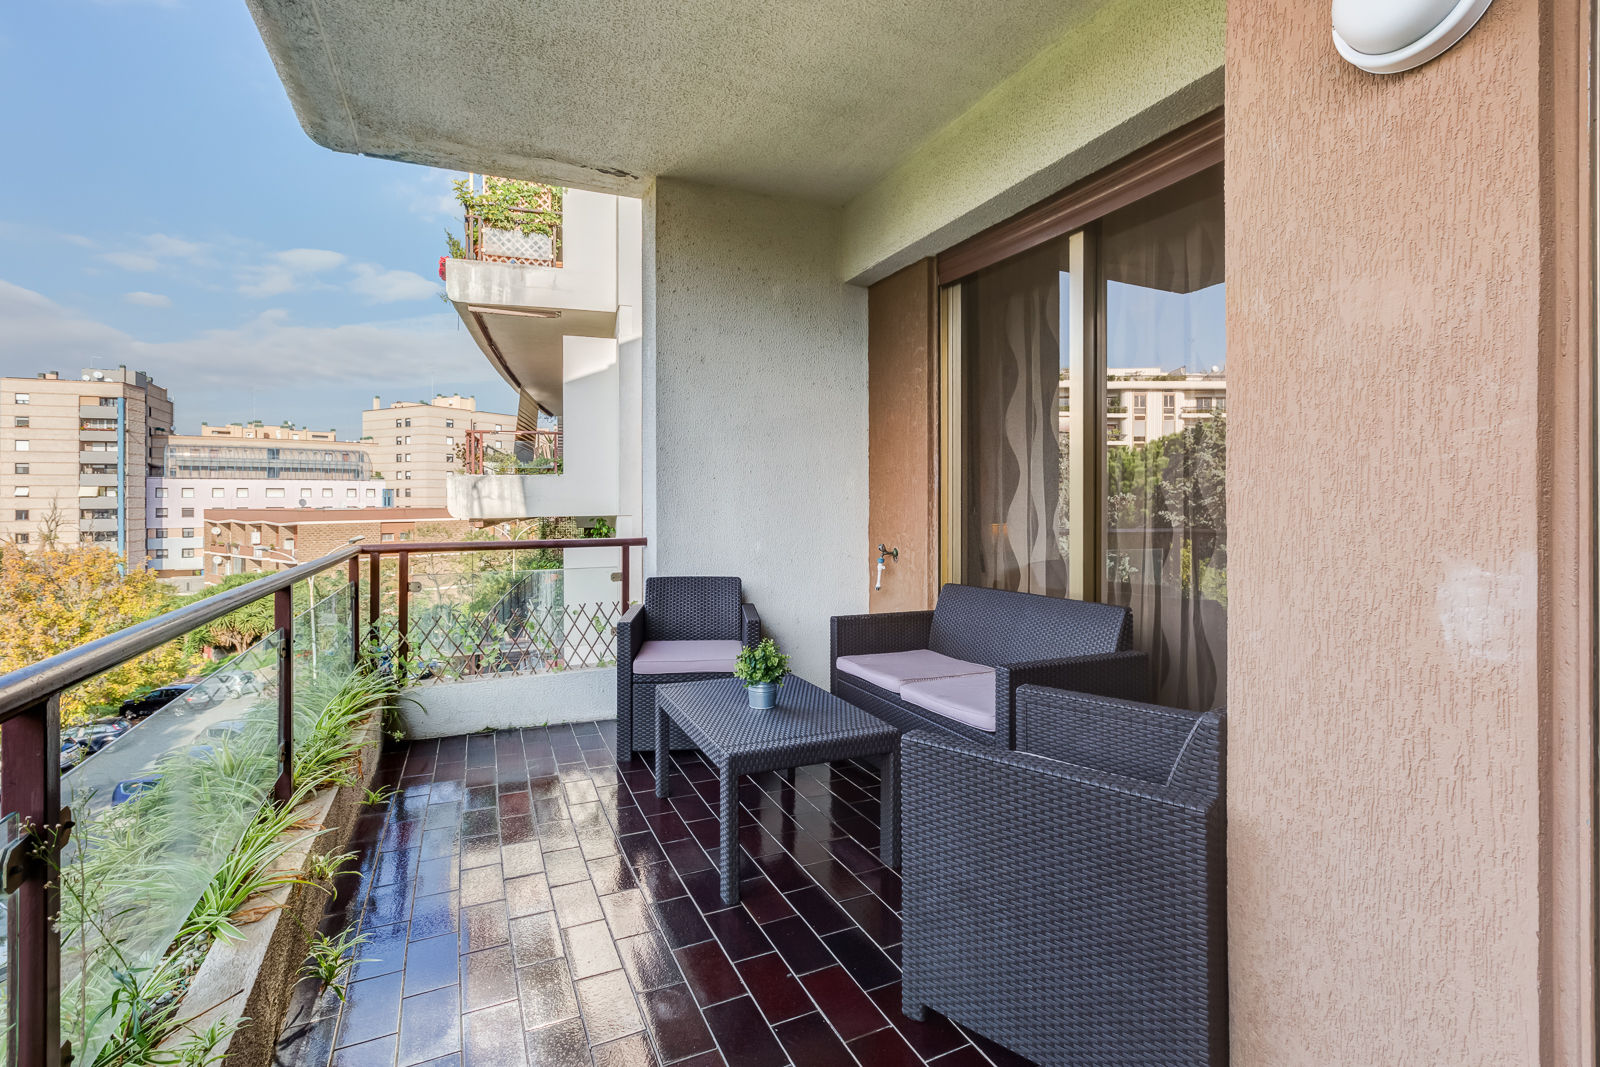 Appartamento Laurentina - Roma, Luca Tranquilli - Fotografo Luca Tranquilli - Fotografo Terrace